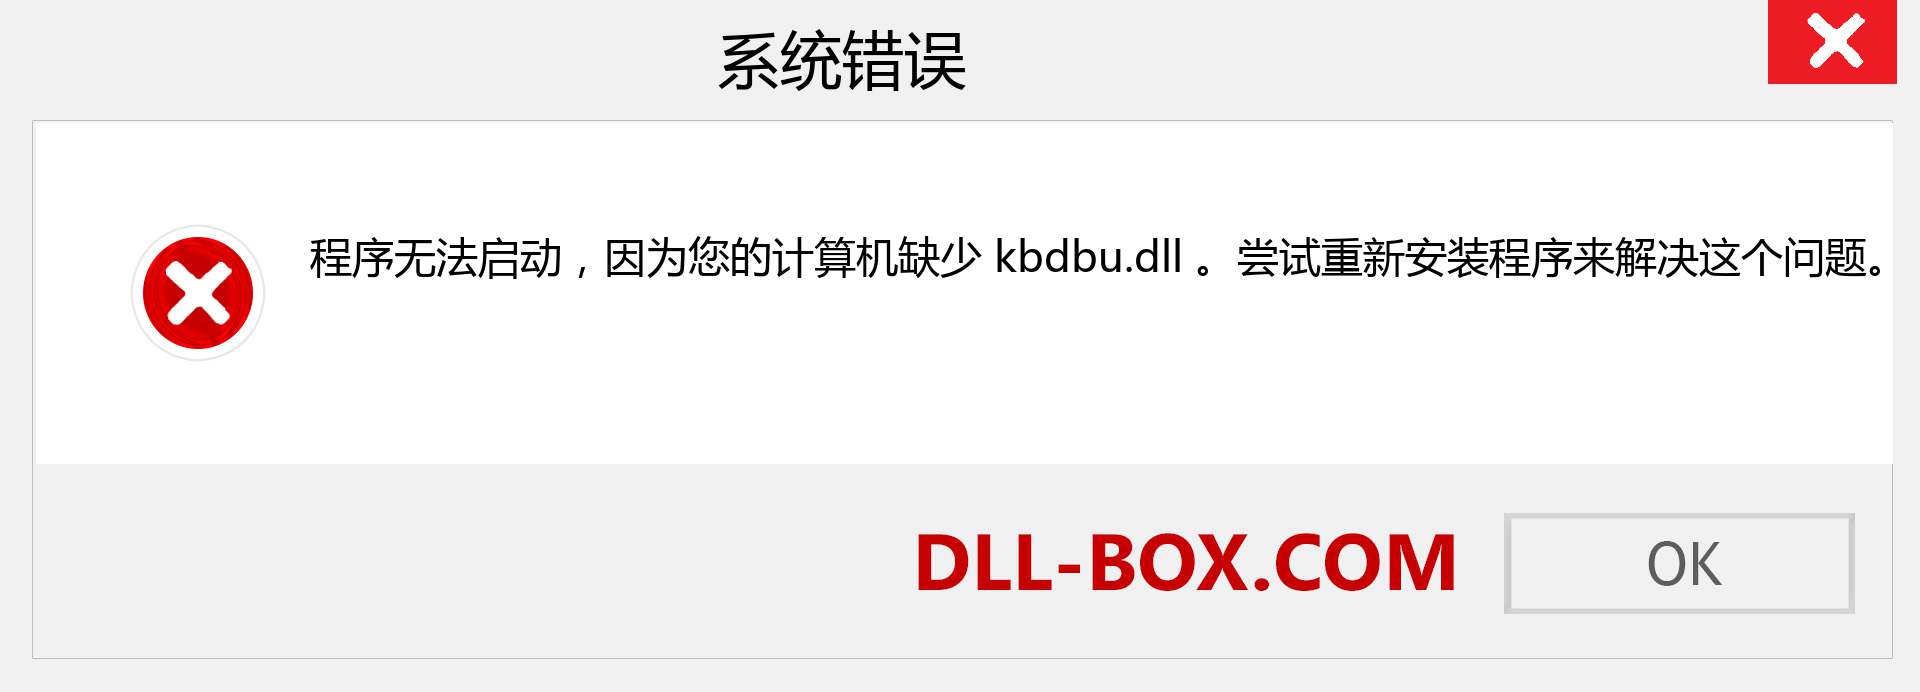 kbdbu.dll 文件丢失？。 适用于 Windows 7、8、10 的下载 - 修复 Windows、照片、图像上的 kbdbu dll 丢失错误